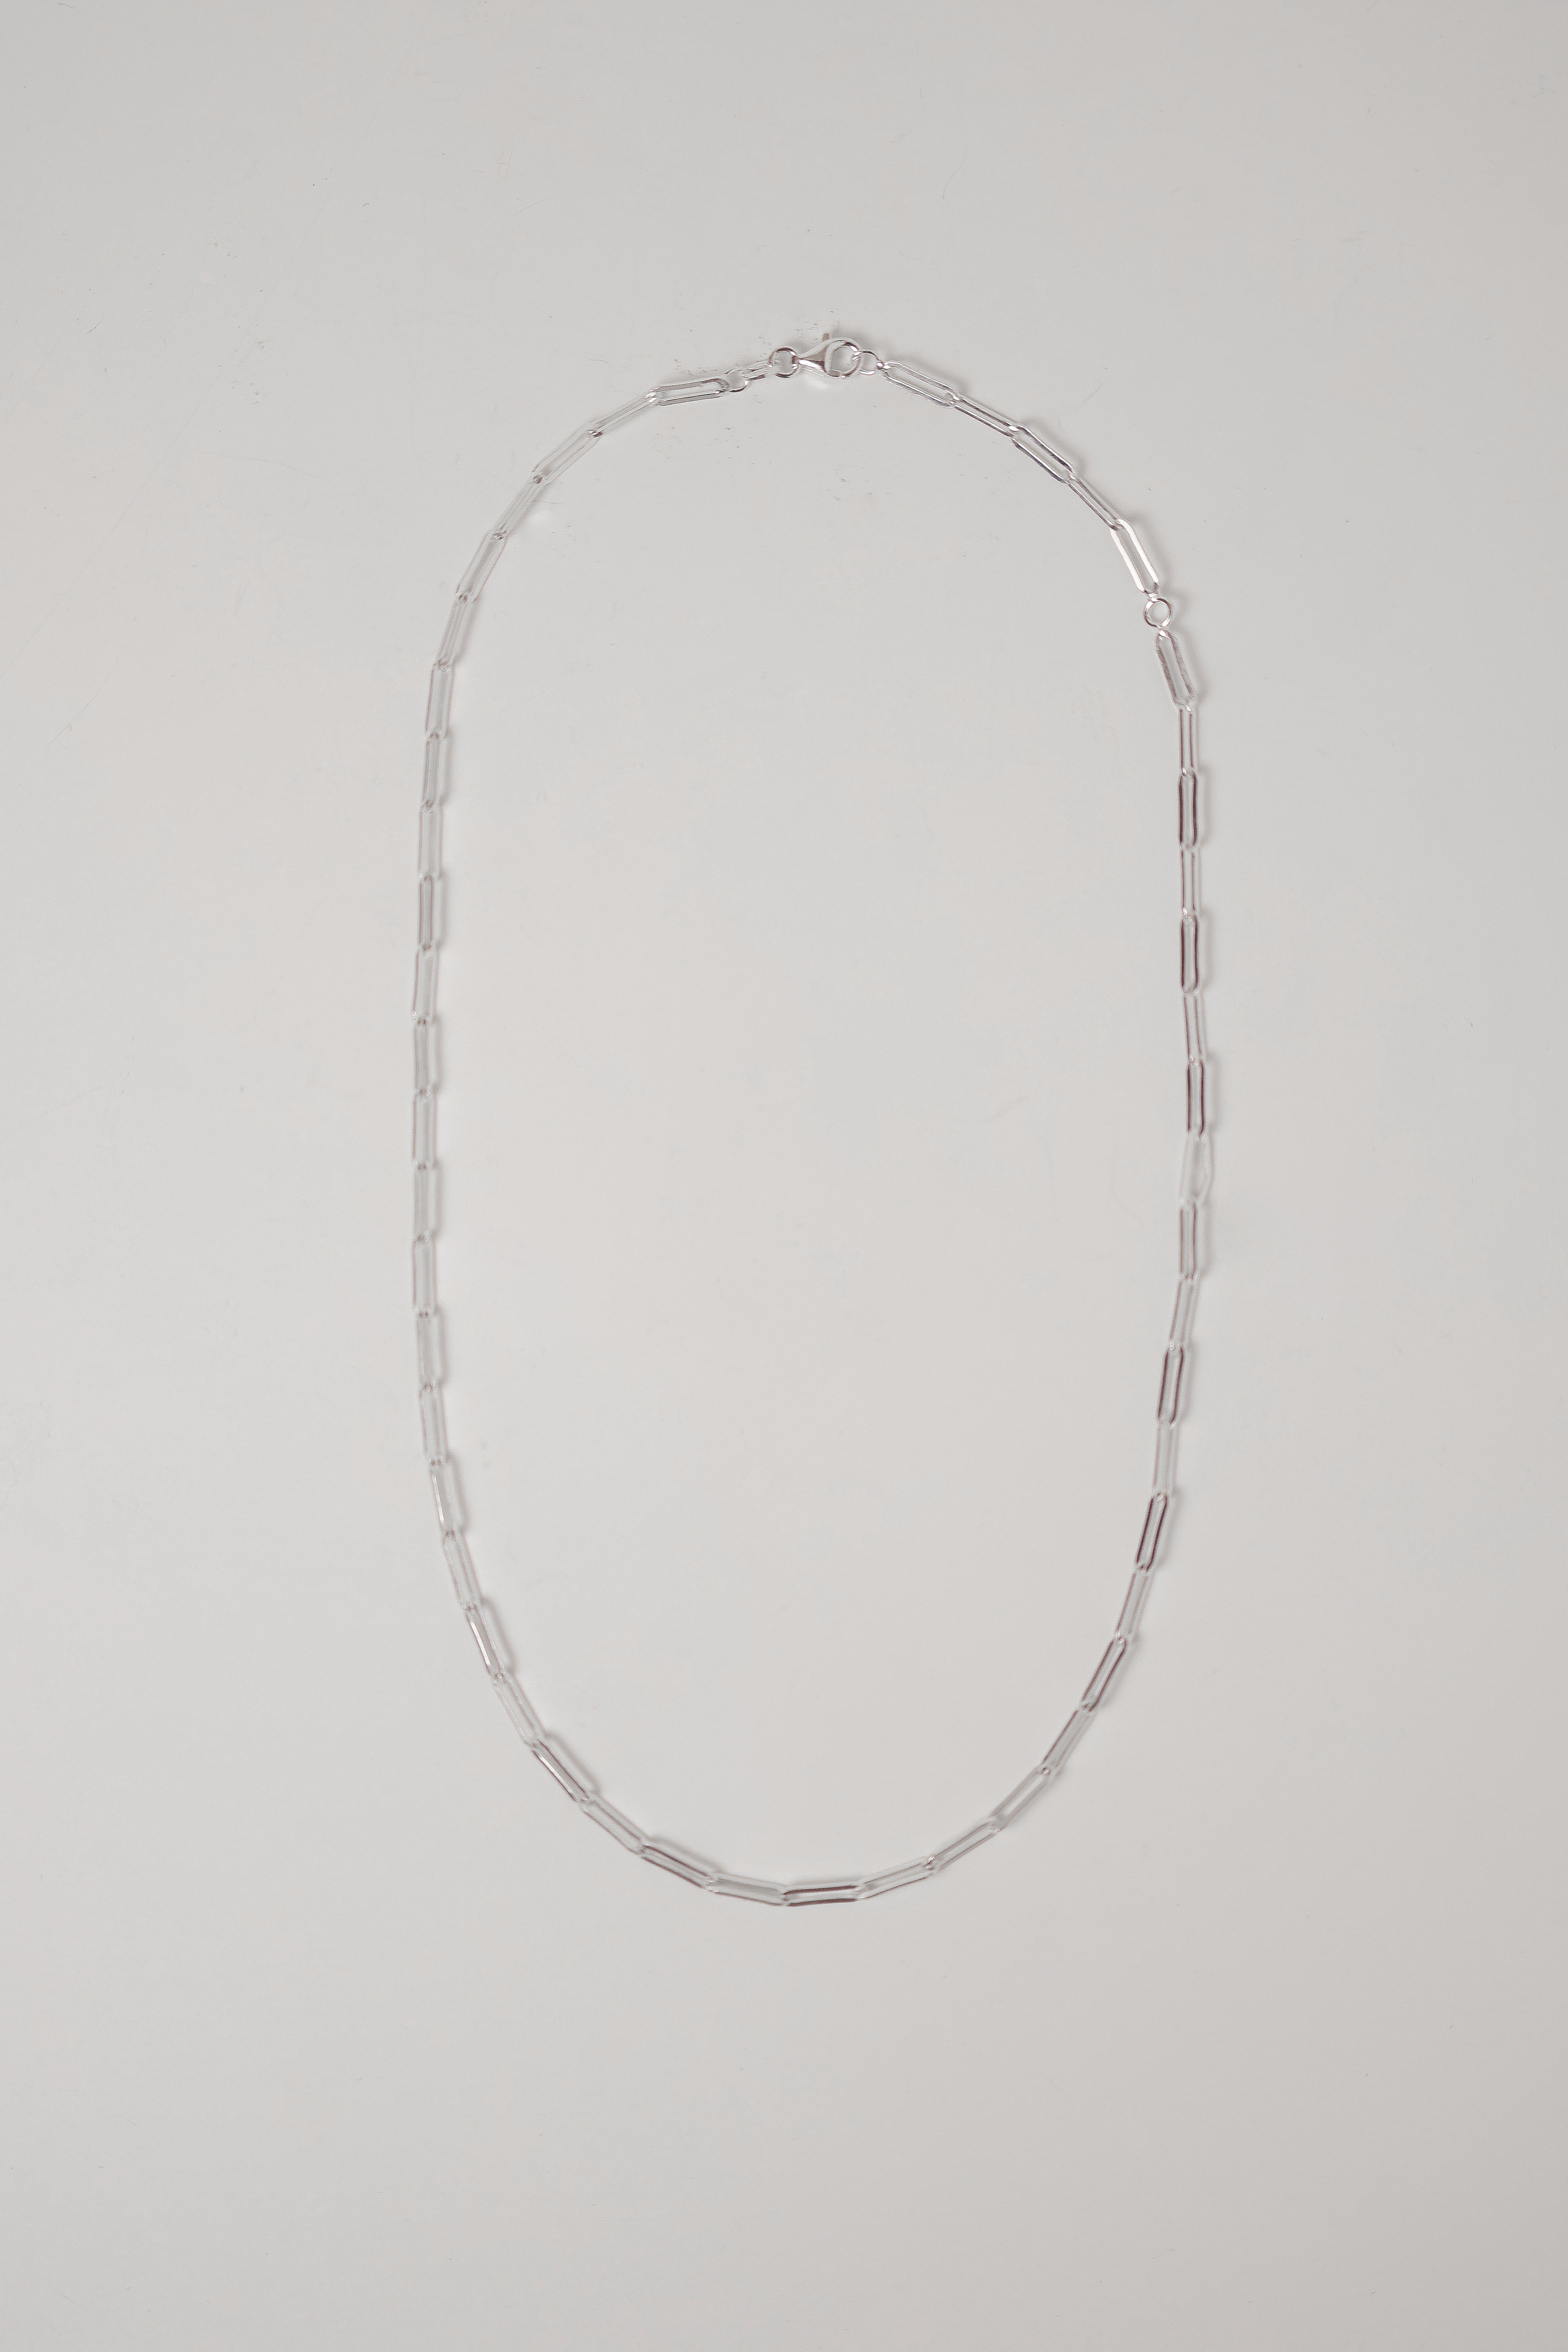 Midi Oblong Chain | $189